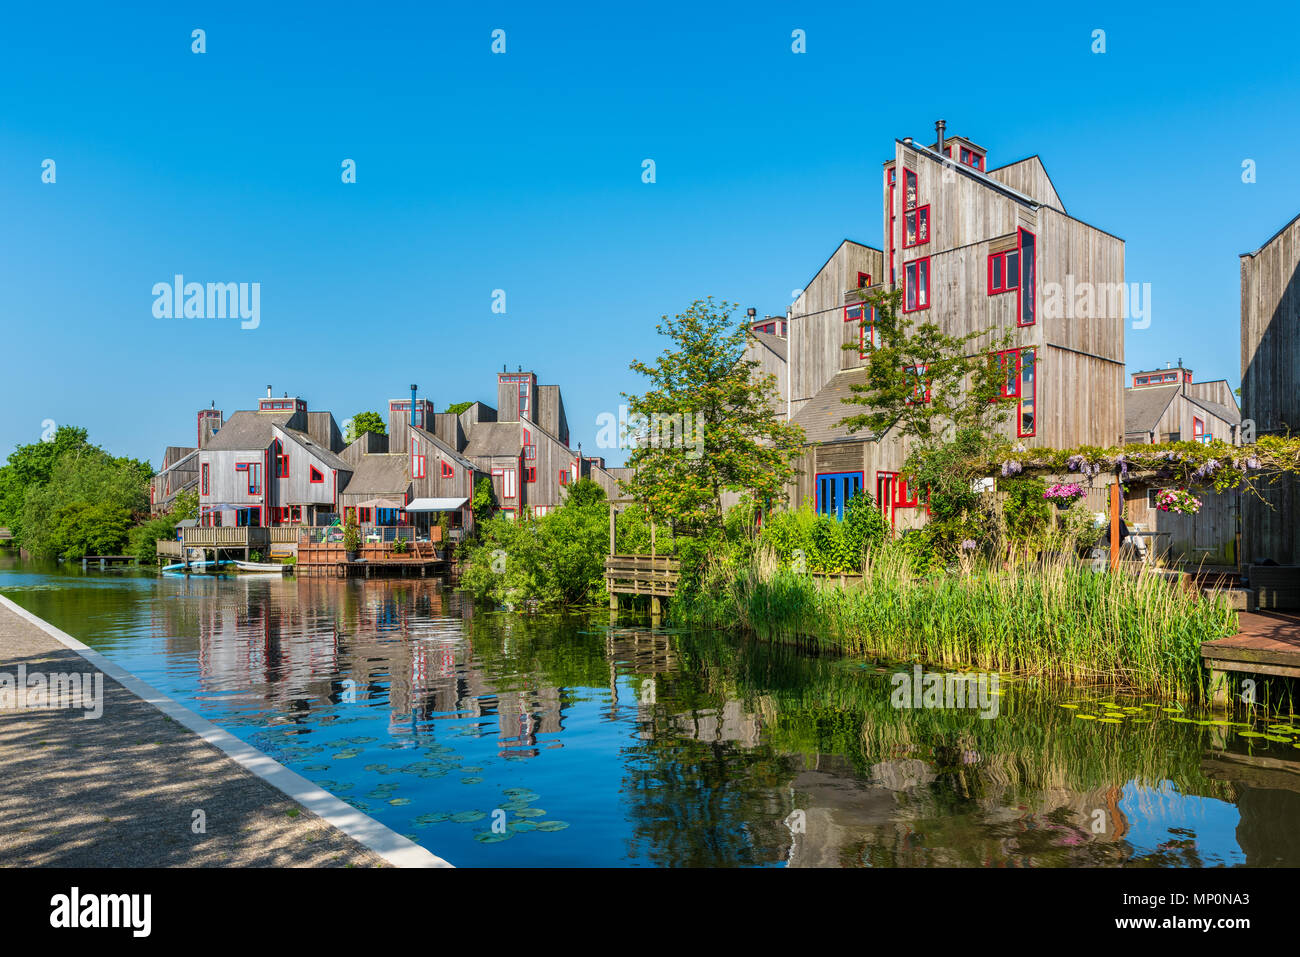 Quartier moderne avec des maisons en bois à Alkmaar Pays-Bas Banque D'Images